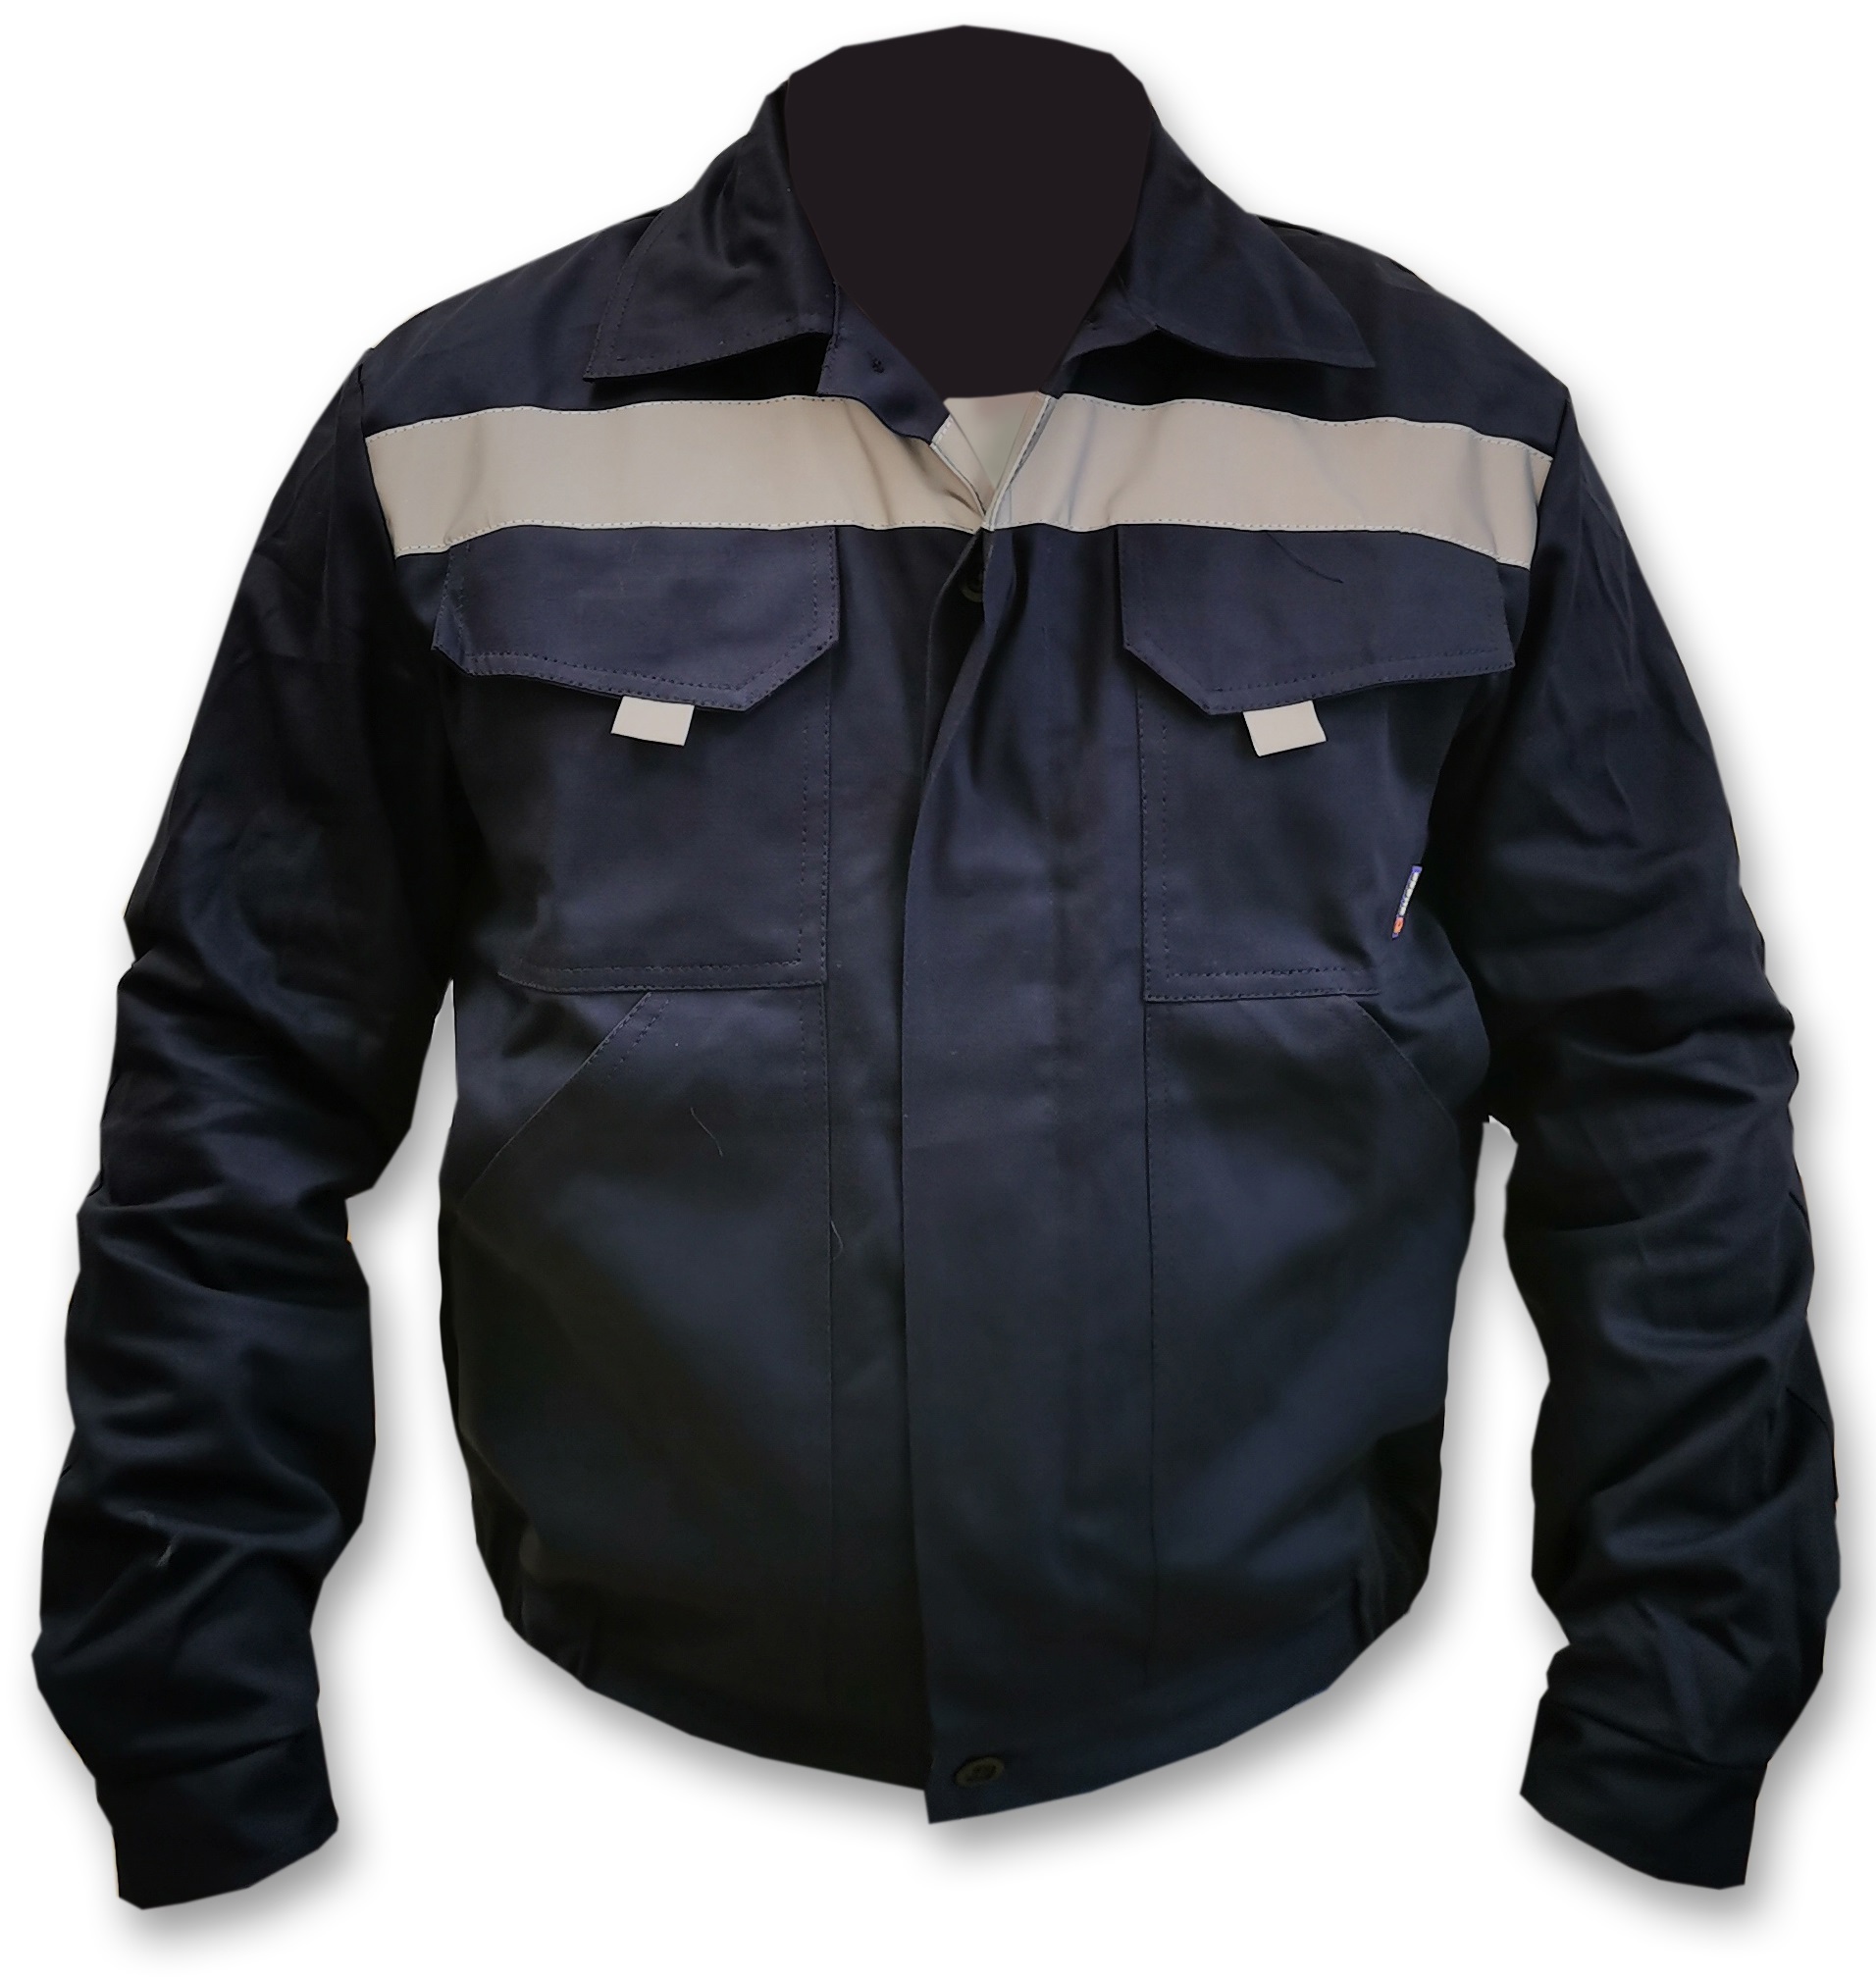 83411737 Куртка Техник, темно-синяя (разм. 52-54, рост 182-188) STLM-0041197 Santreyd